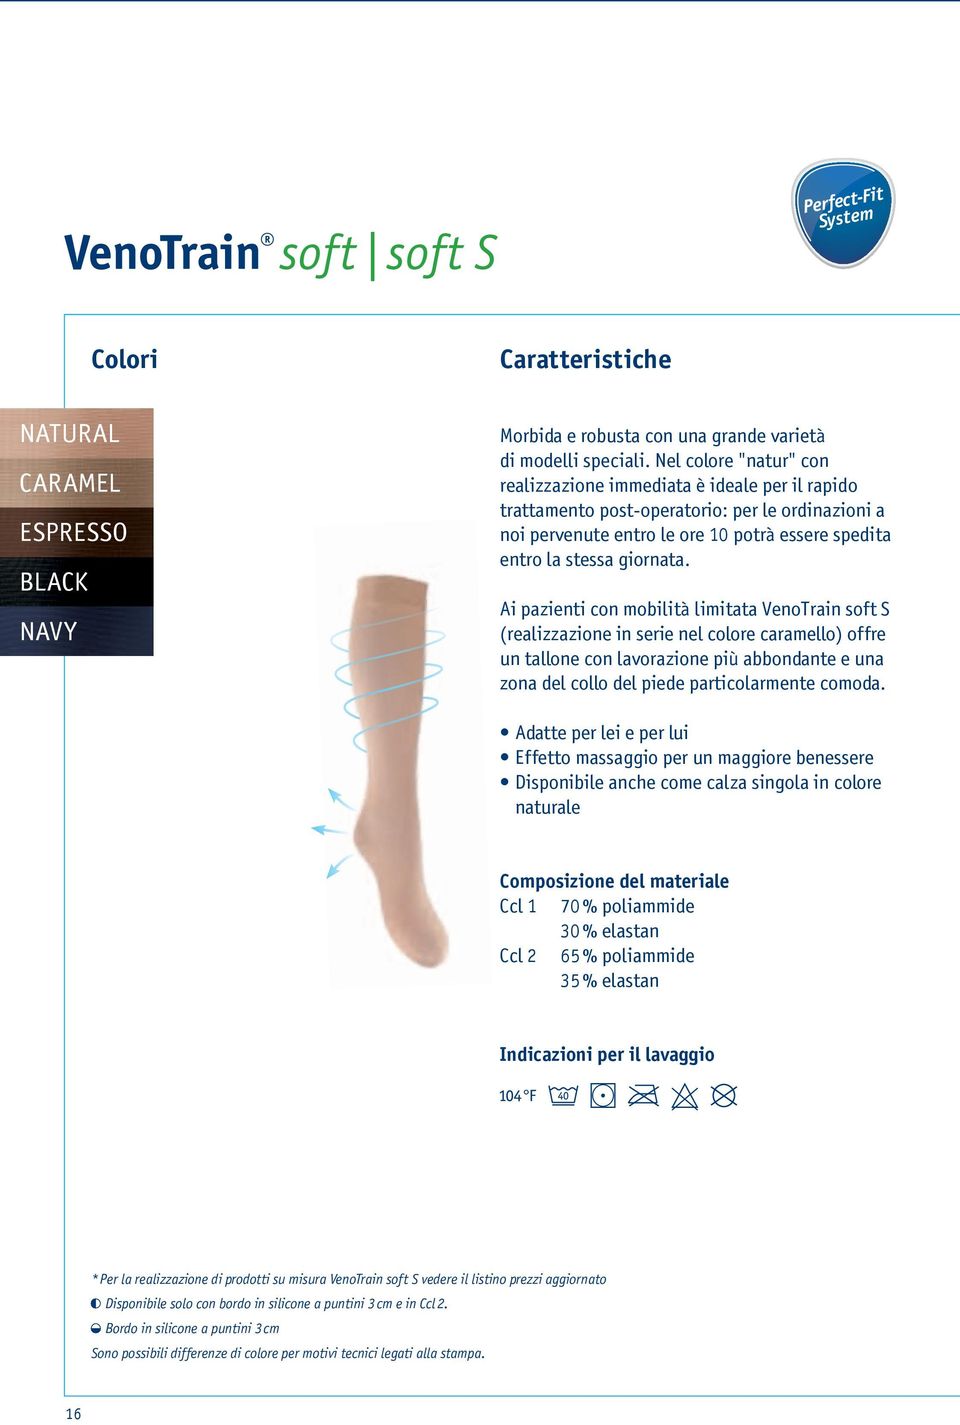 Ai pazienti con mobilità limitata VenoTrain soft S (realizzazione in serie nel colore caramello) offre un tallone con lavorazione più abbondante e una zona del collo del piede particolarmente comoda.